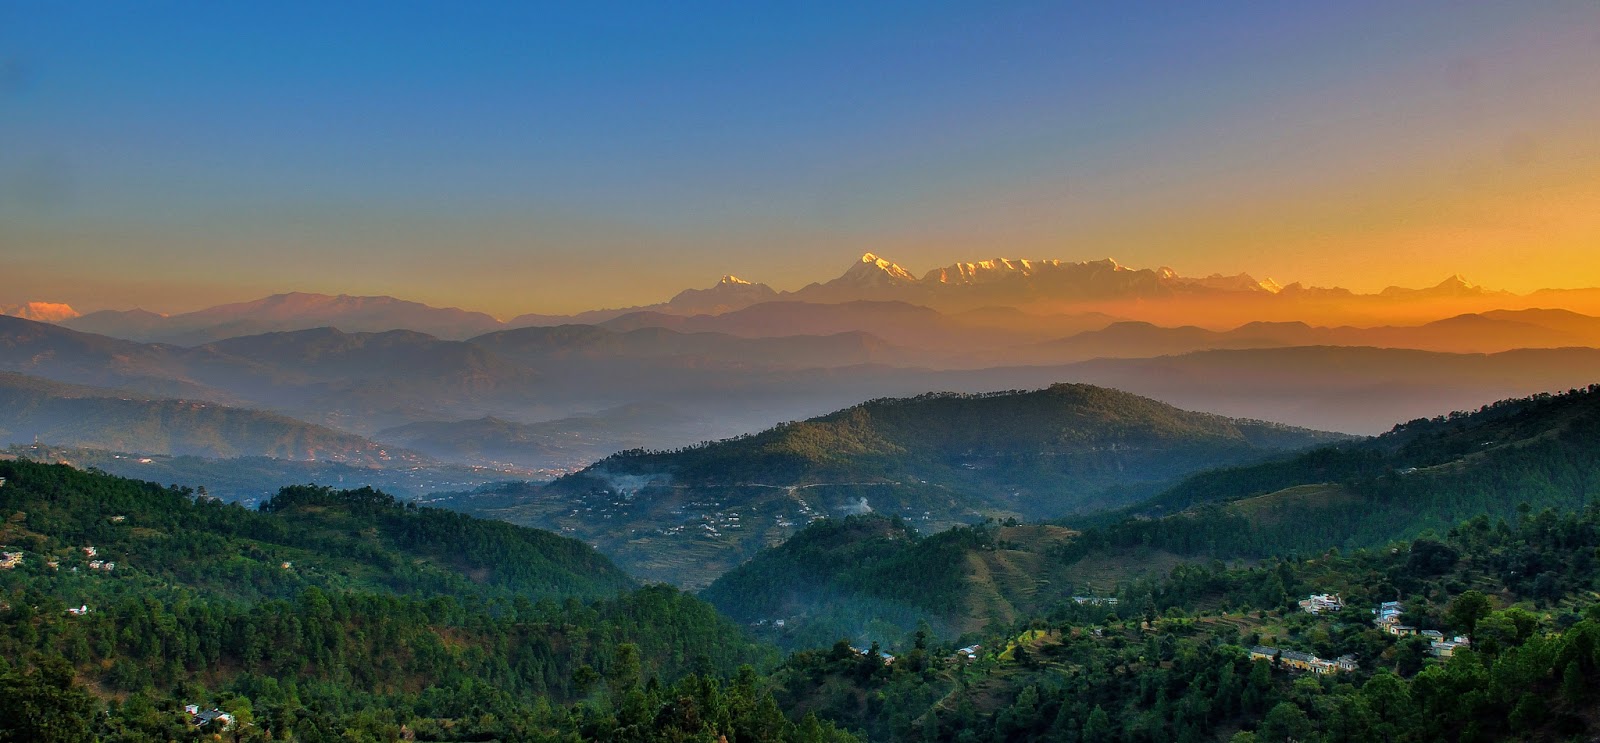 Uttarakhand – The Land of Gods